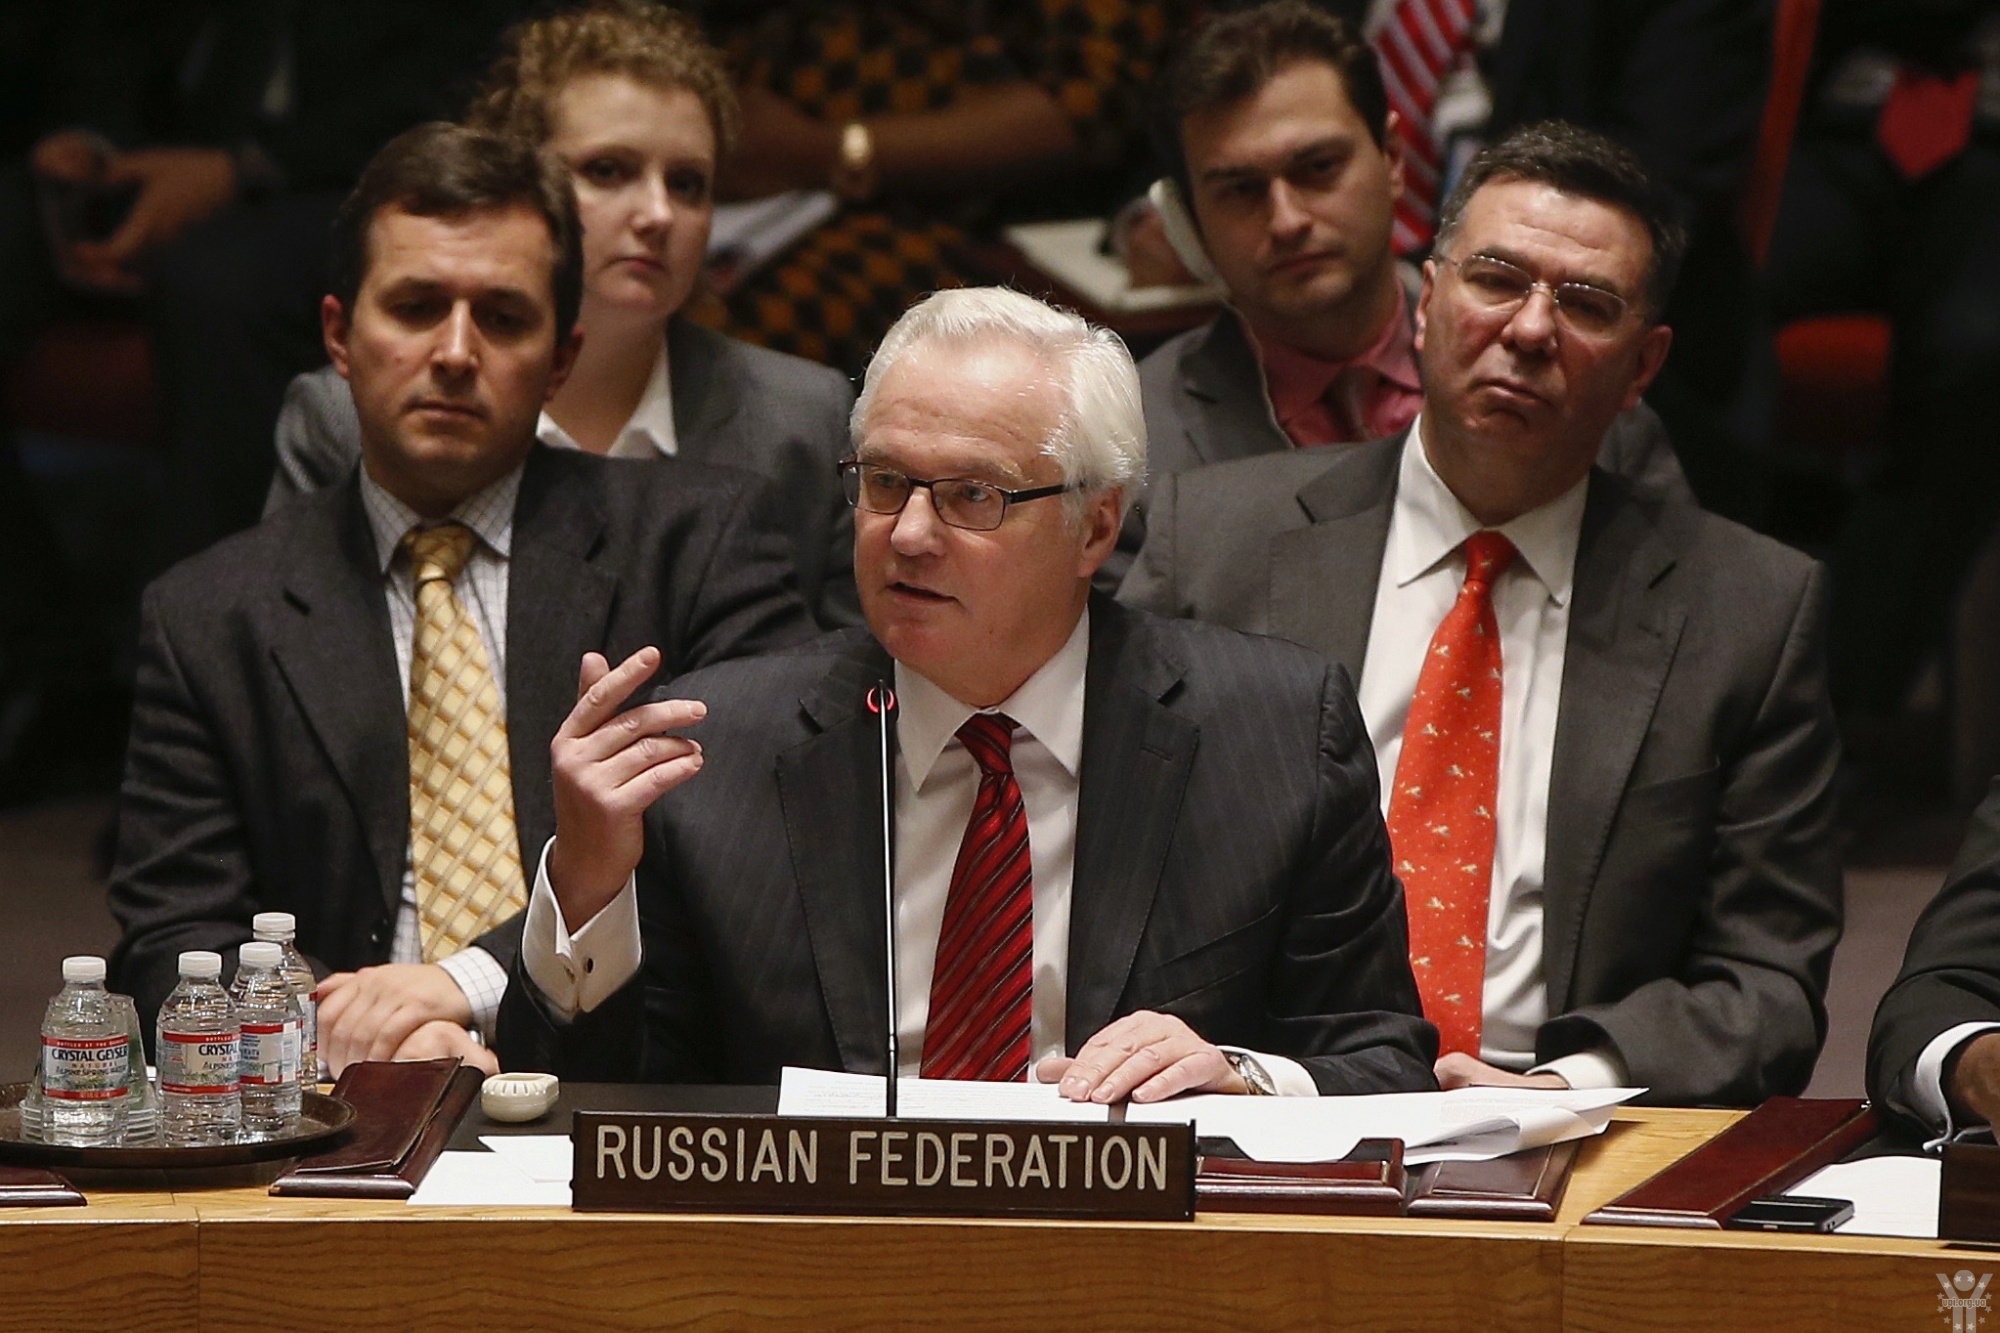 Представник РФ на Радбезі по-хамськи прокоментував звіт спеціалістів ООН щодо України (ВІДЕО)